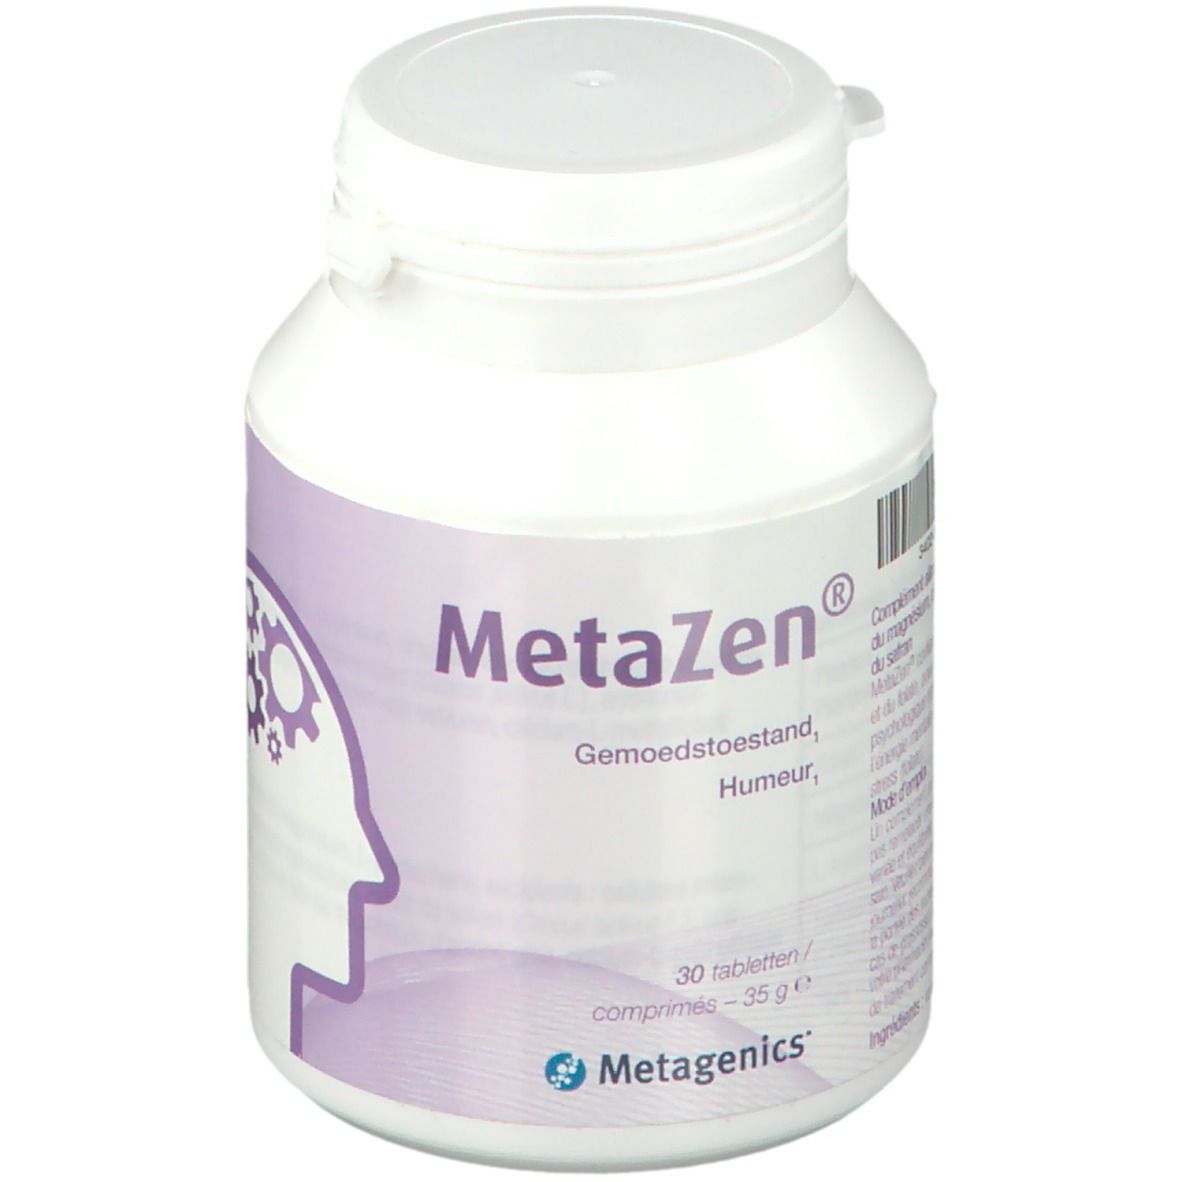 Metazen